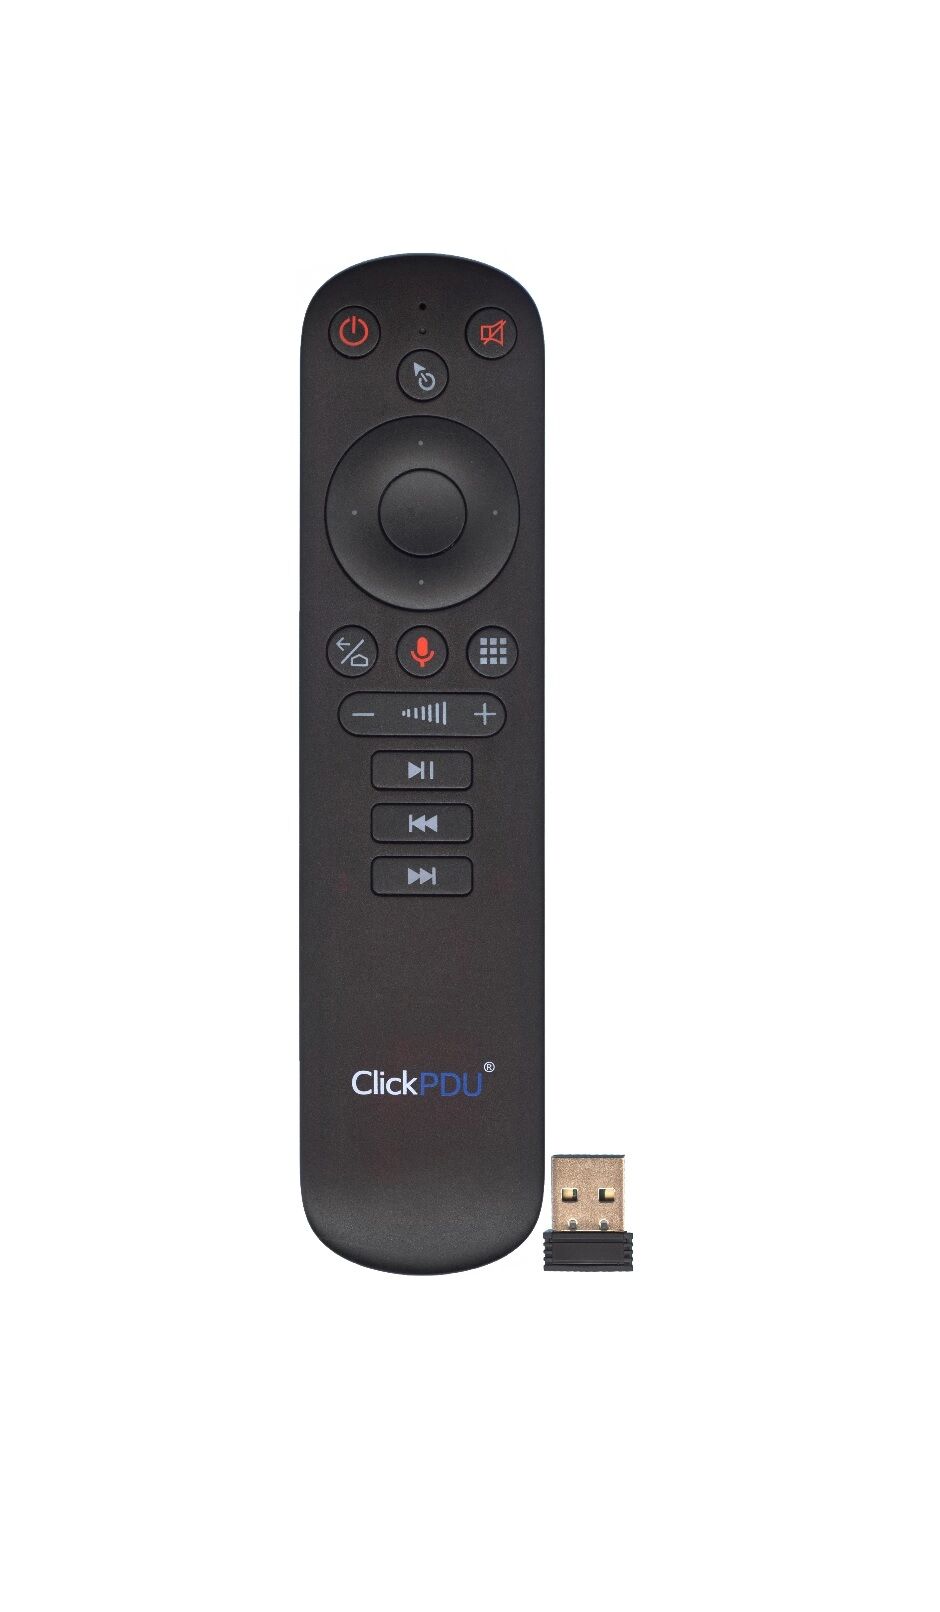 Пульт ДУ универсальный ClickPDU G50S Air Mouse с гироскопом и голосовым управлением для Android TV Box, PC